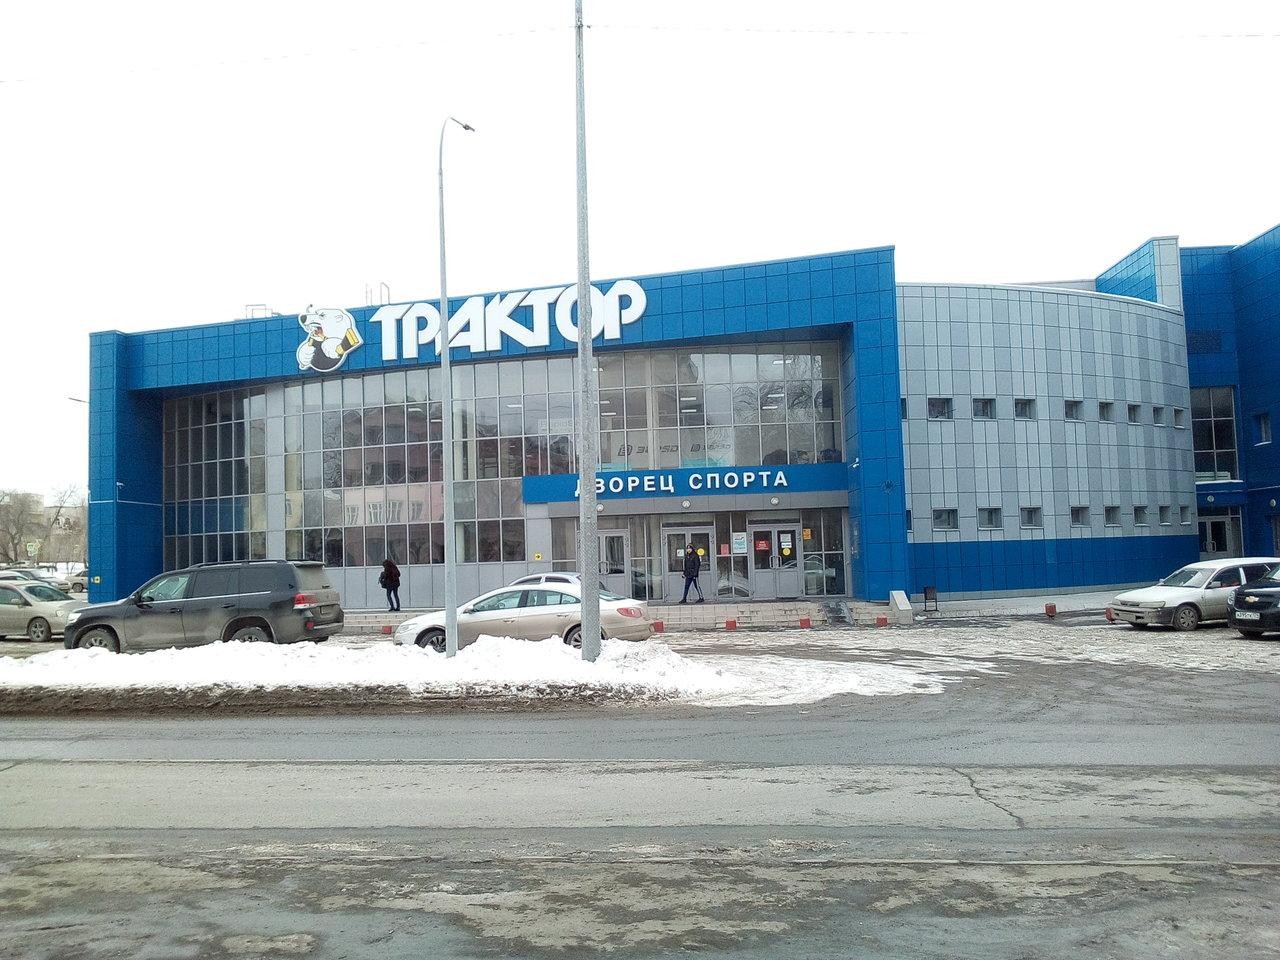 ЛДС "Трактор" (Челябинск)